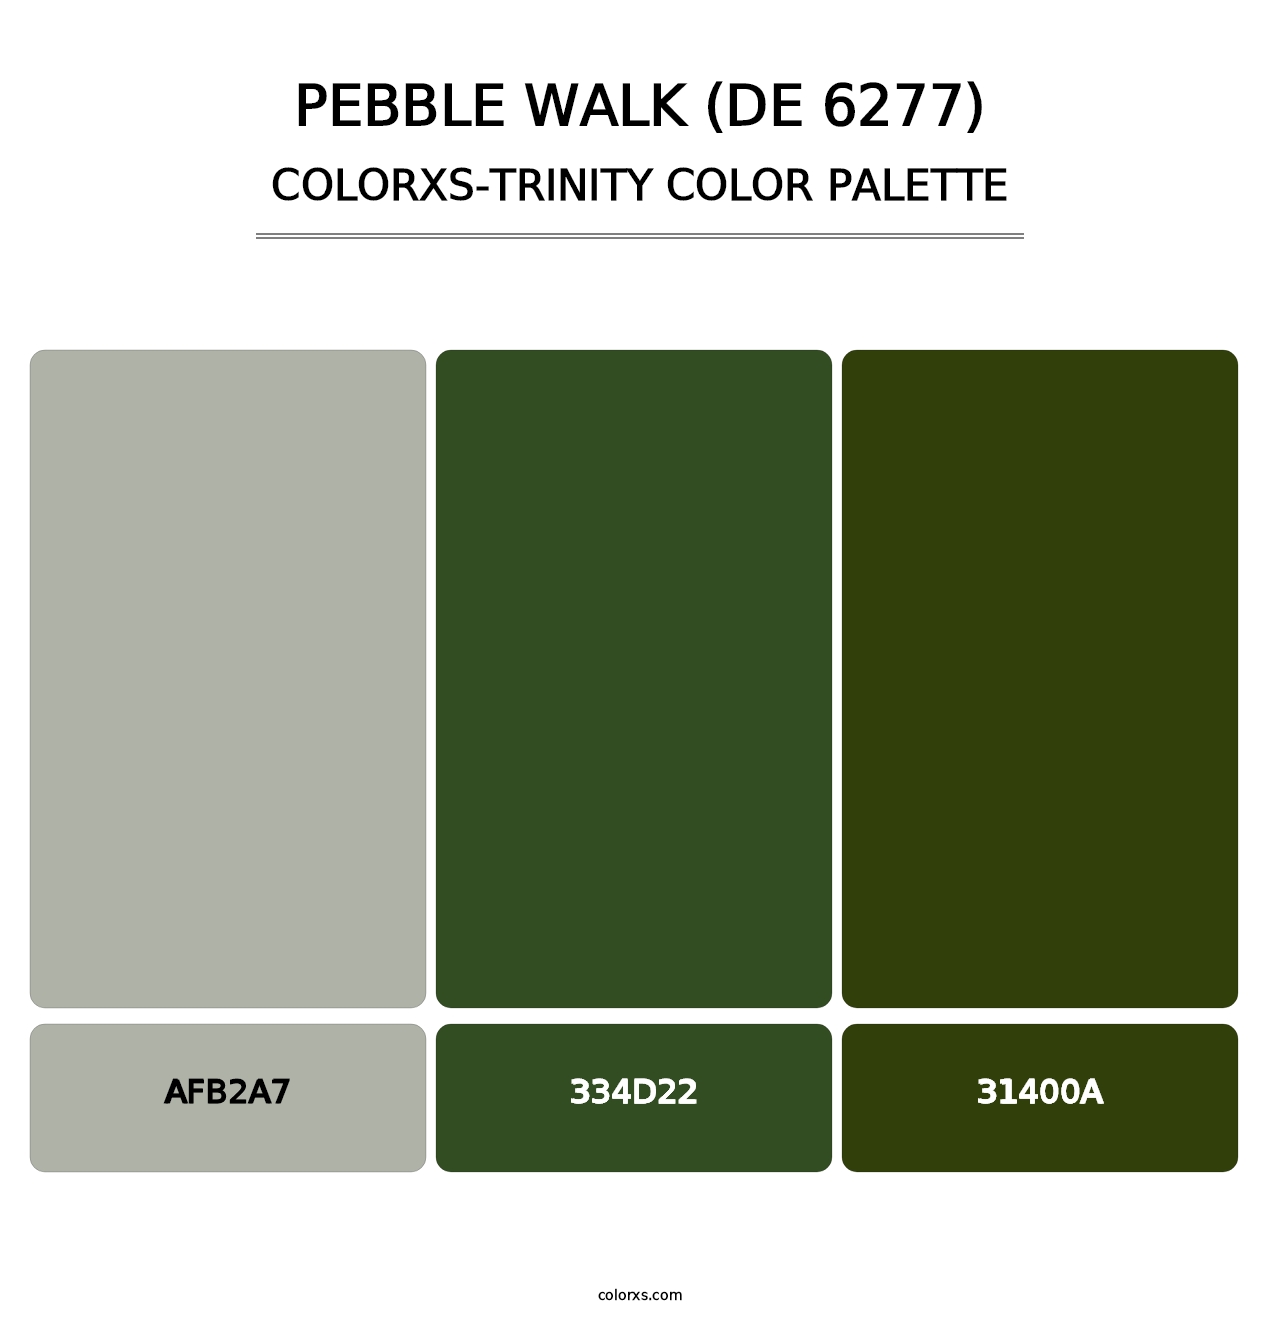 Pebble Walk (DE 6277) - Colorxs Trinity Palette